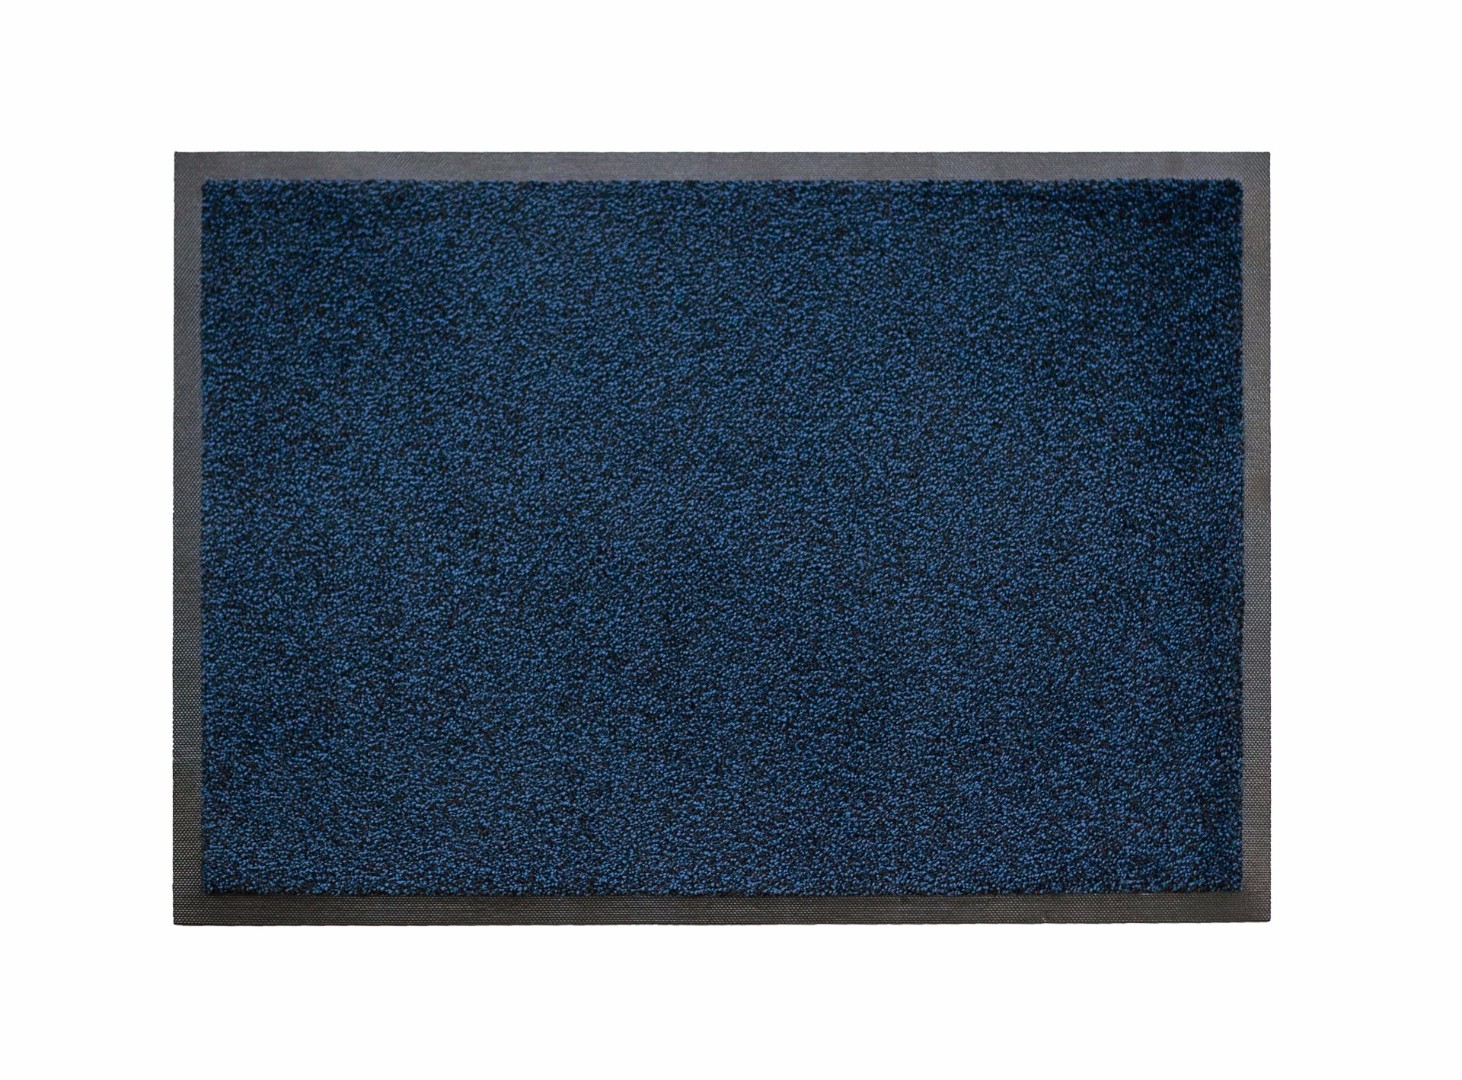 Ворсовый ковер на резиновой основе Iron-Horse black blue 60x85